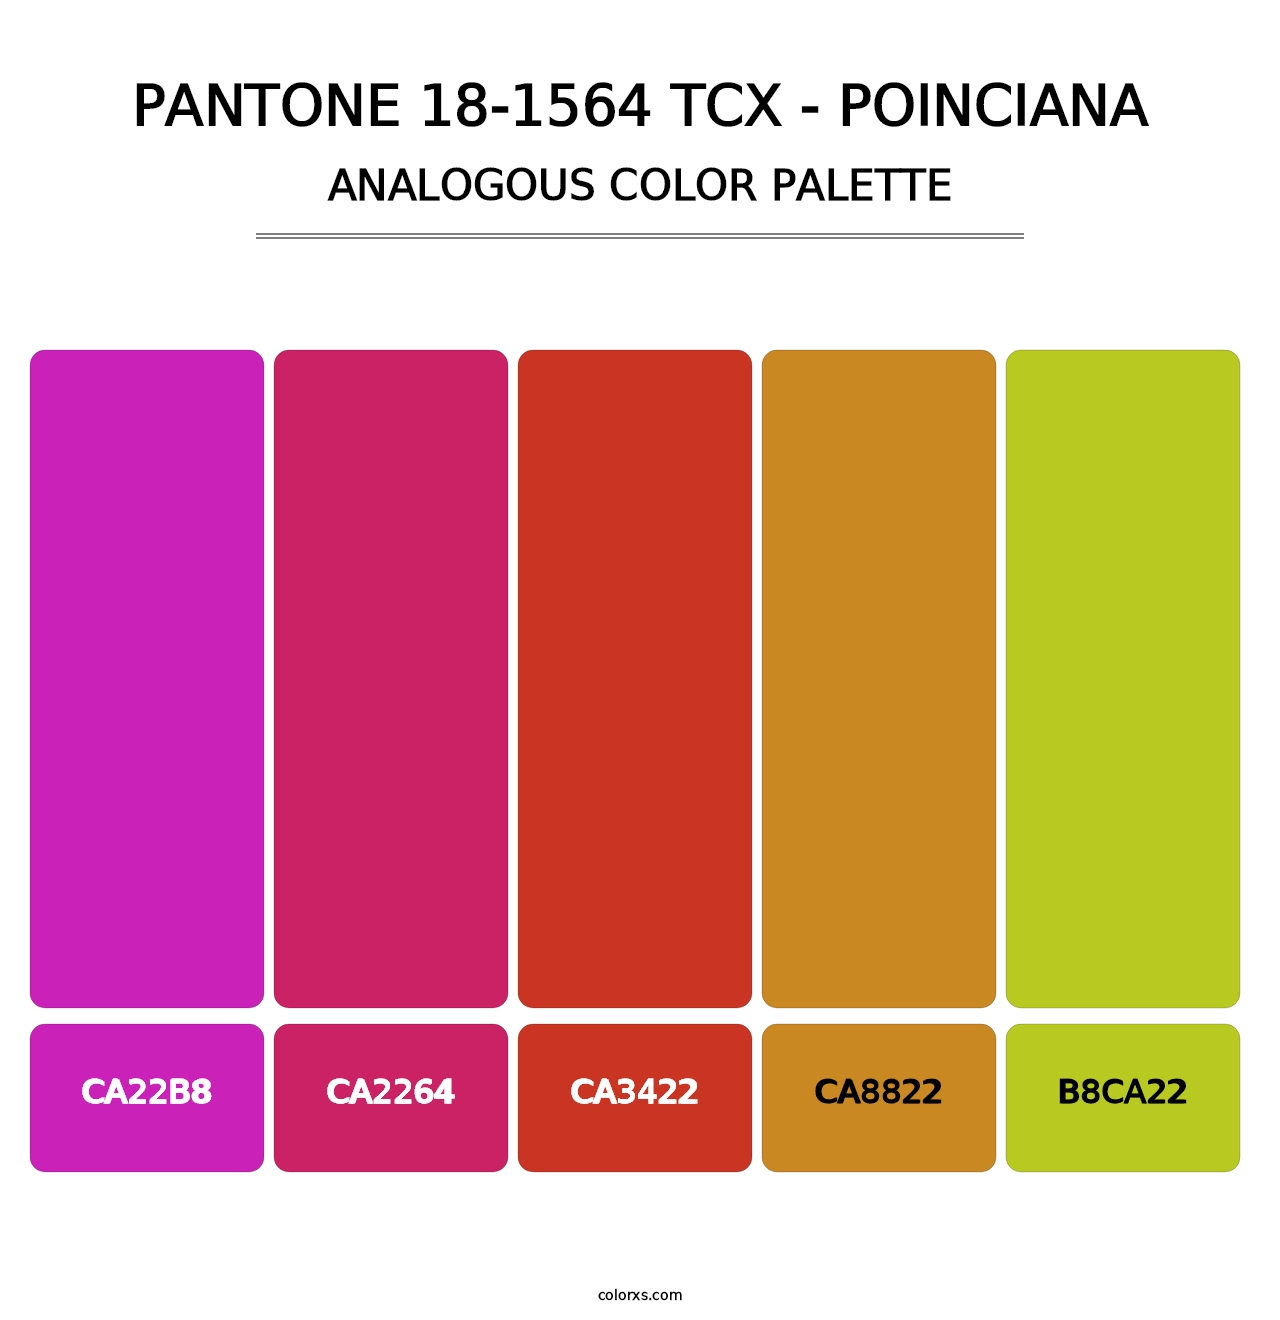 PANTONE 18-1564 TCX - Poinciana - Analogous Color Palette